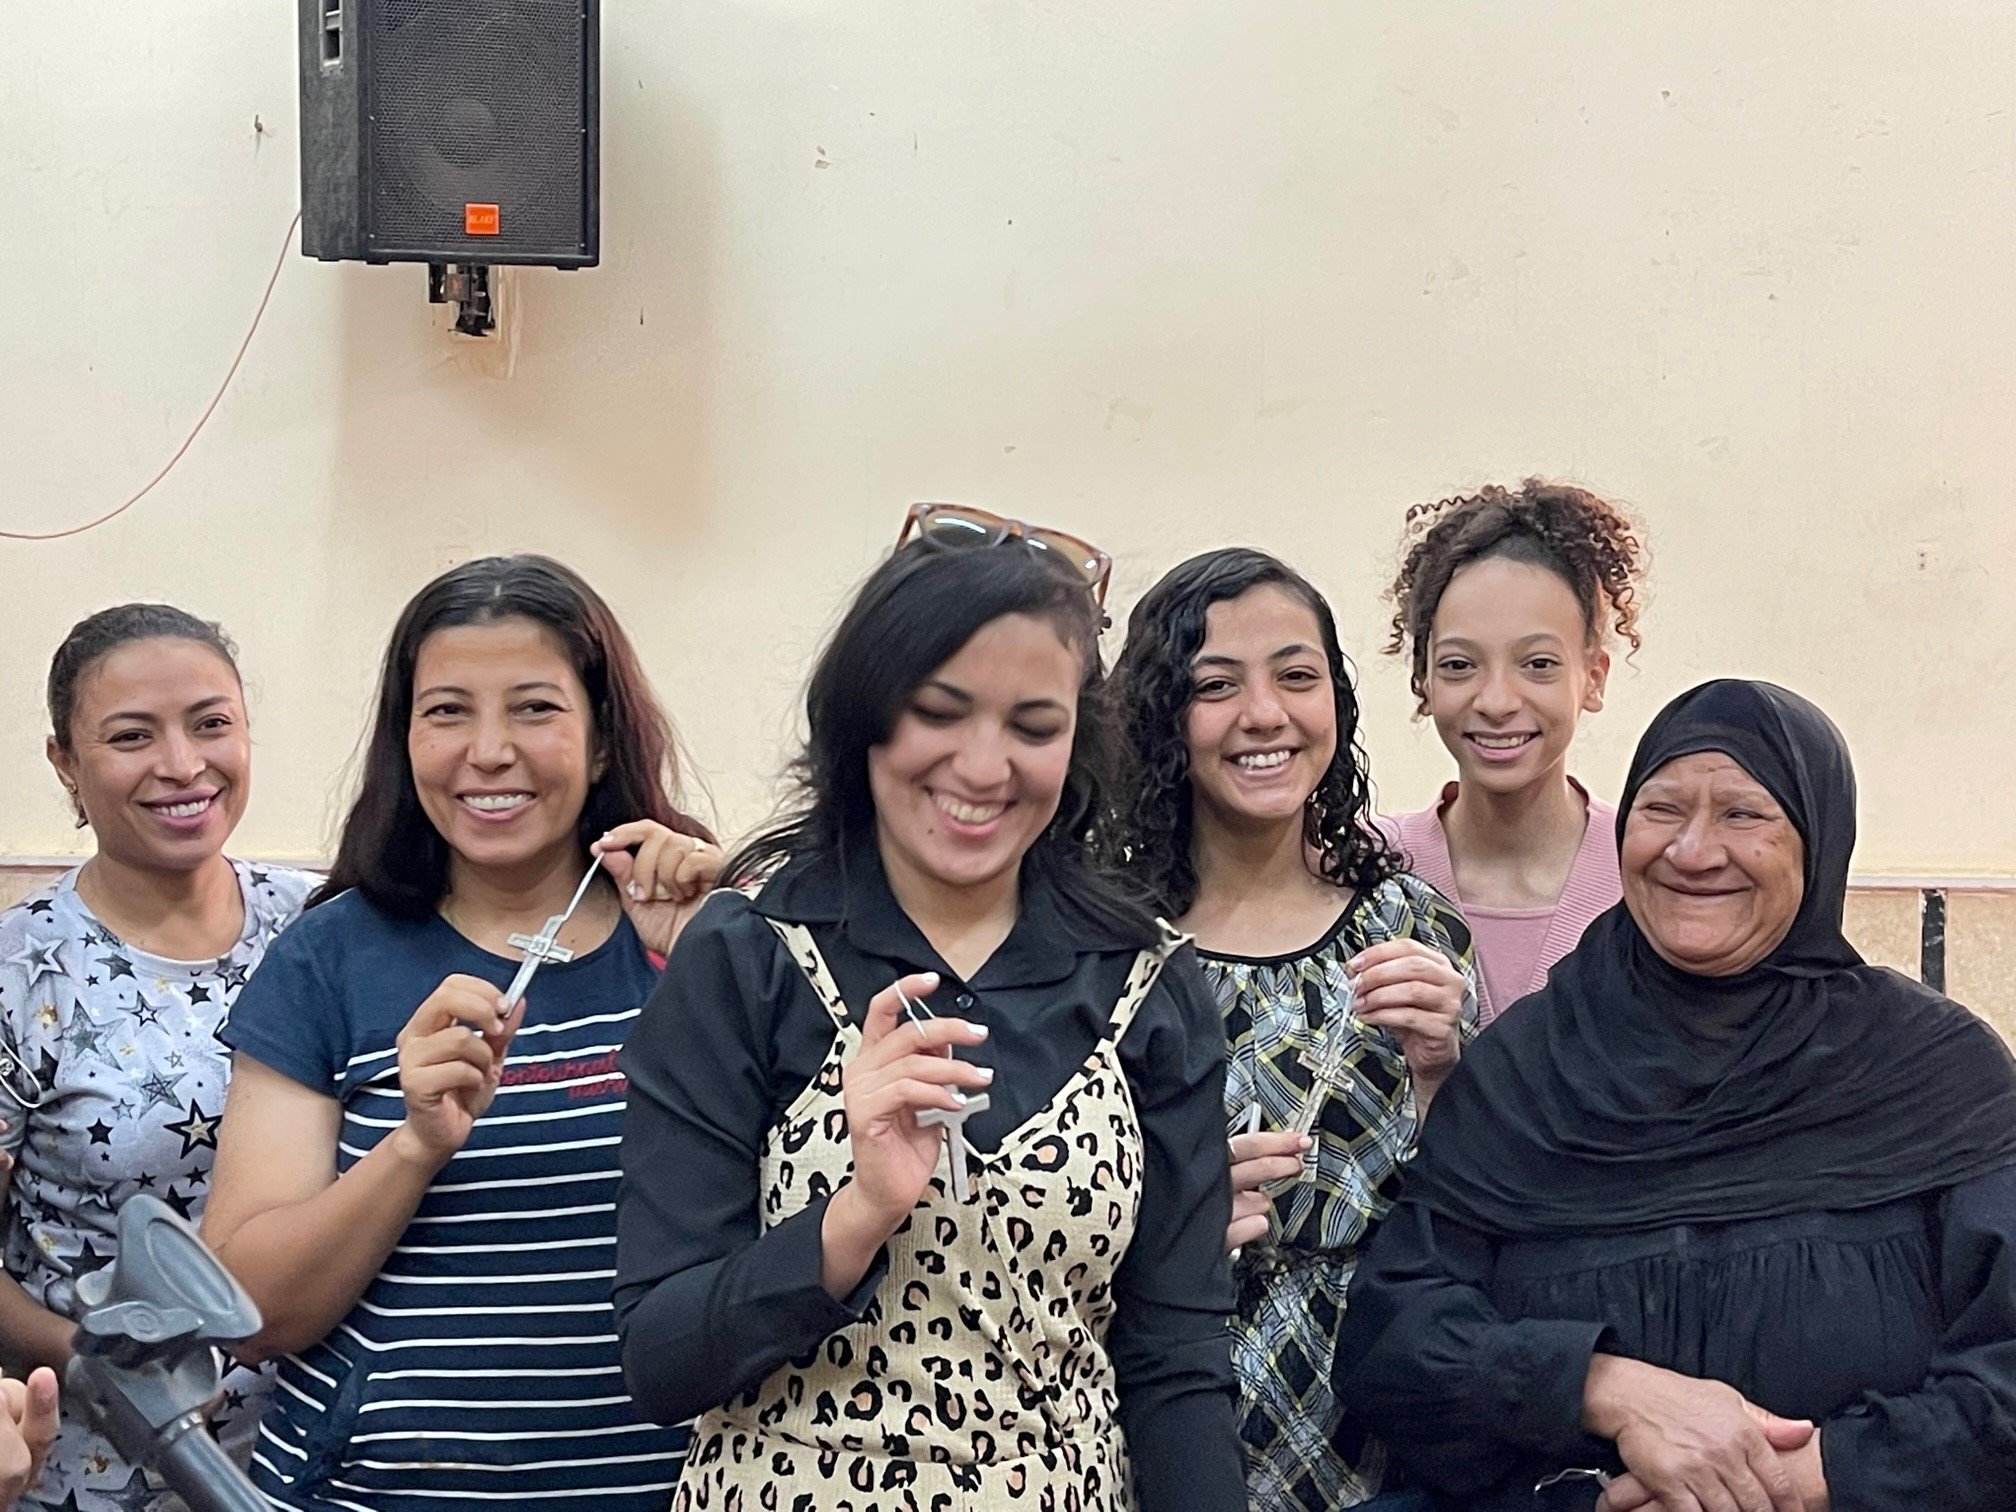 Our joyful sisters in Edfu